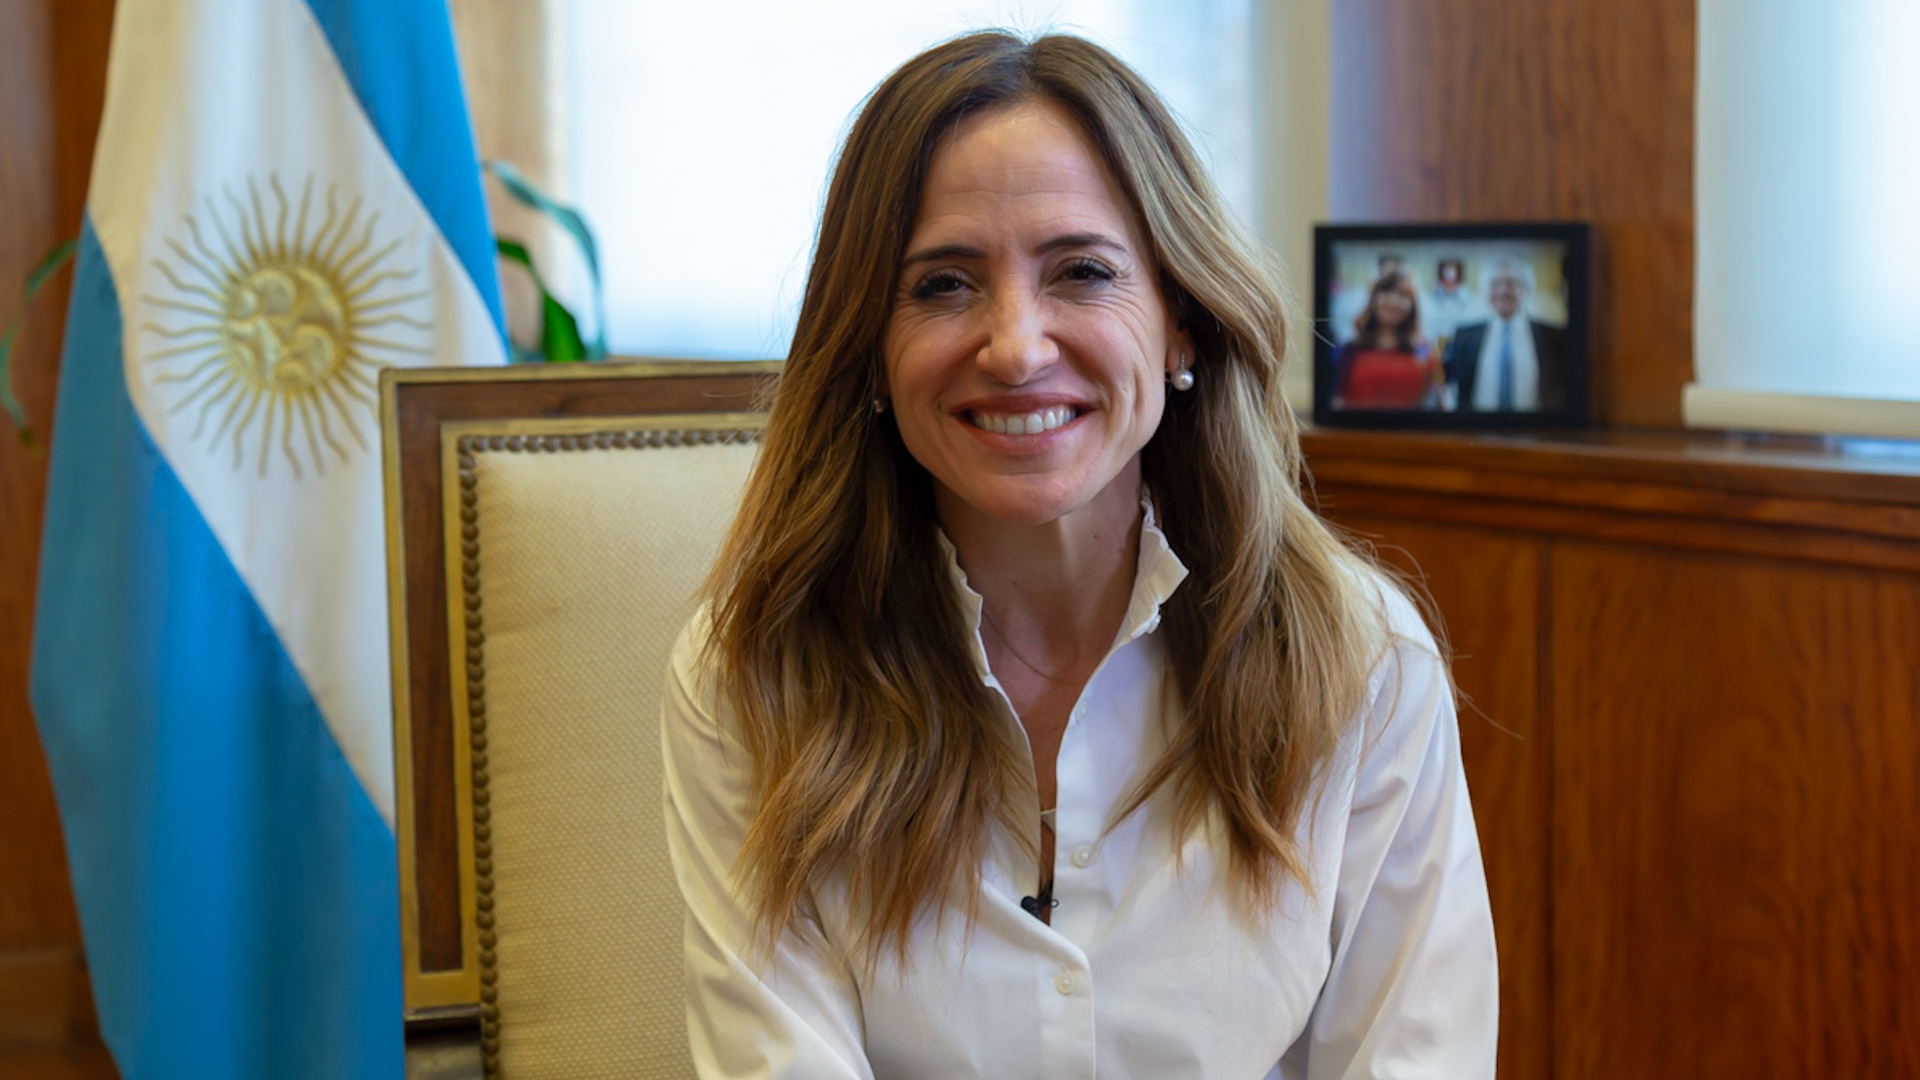 Al asumir el cargo hace un mes, Victoria Tolosa Paz expreso que “es primordial el consenso y la articulación de las políticas sociales en todo el territorio nacional”